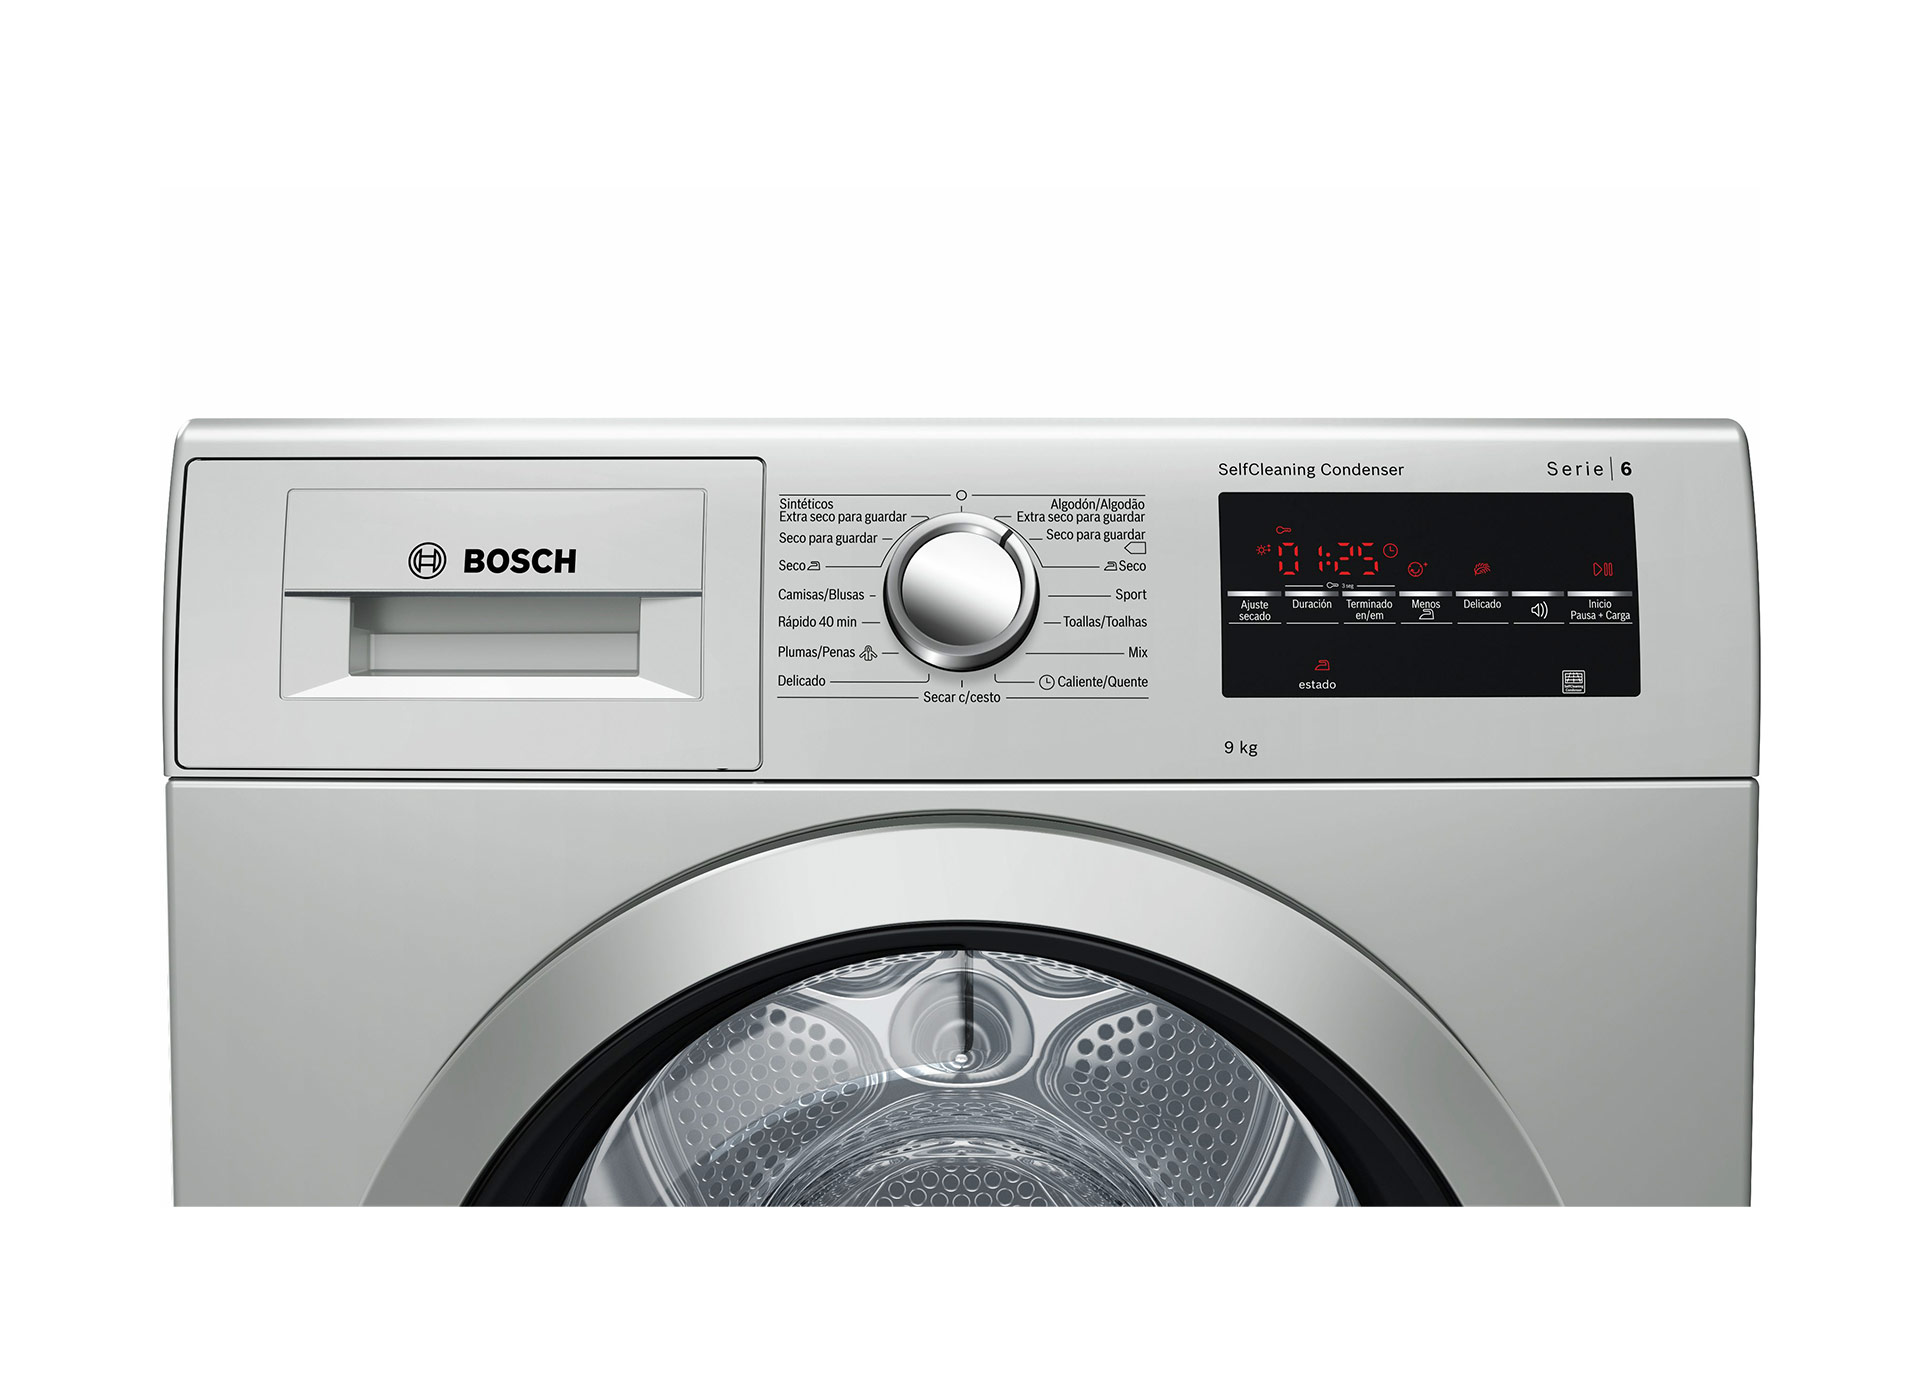 MSR BOSCH - Eletrodoméstico com garantia de qualidade EDP